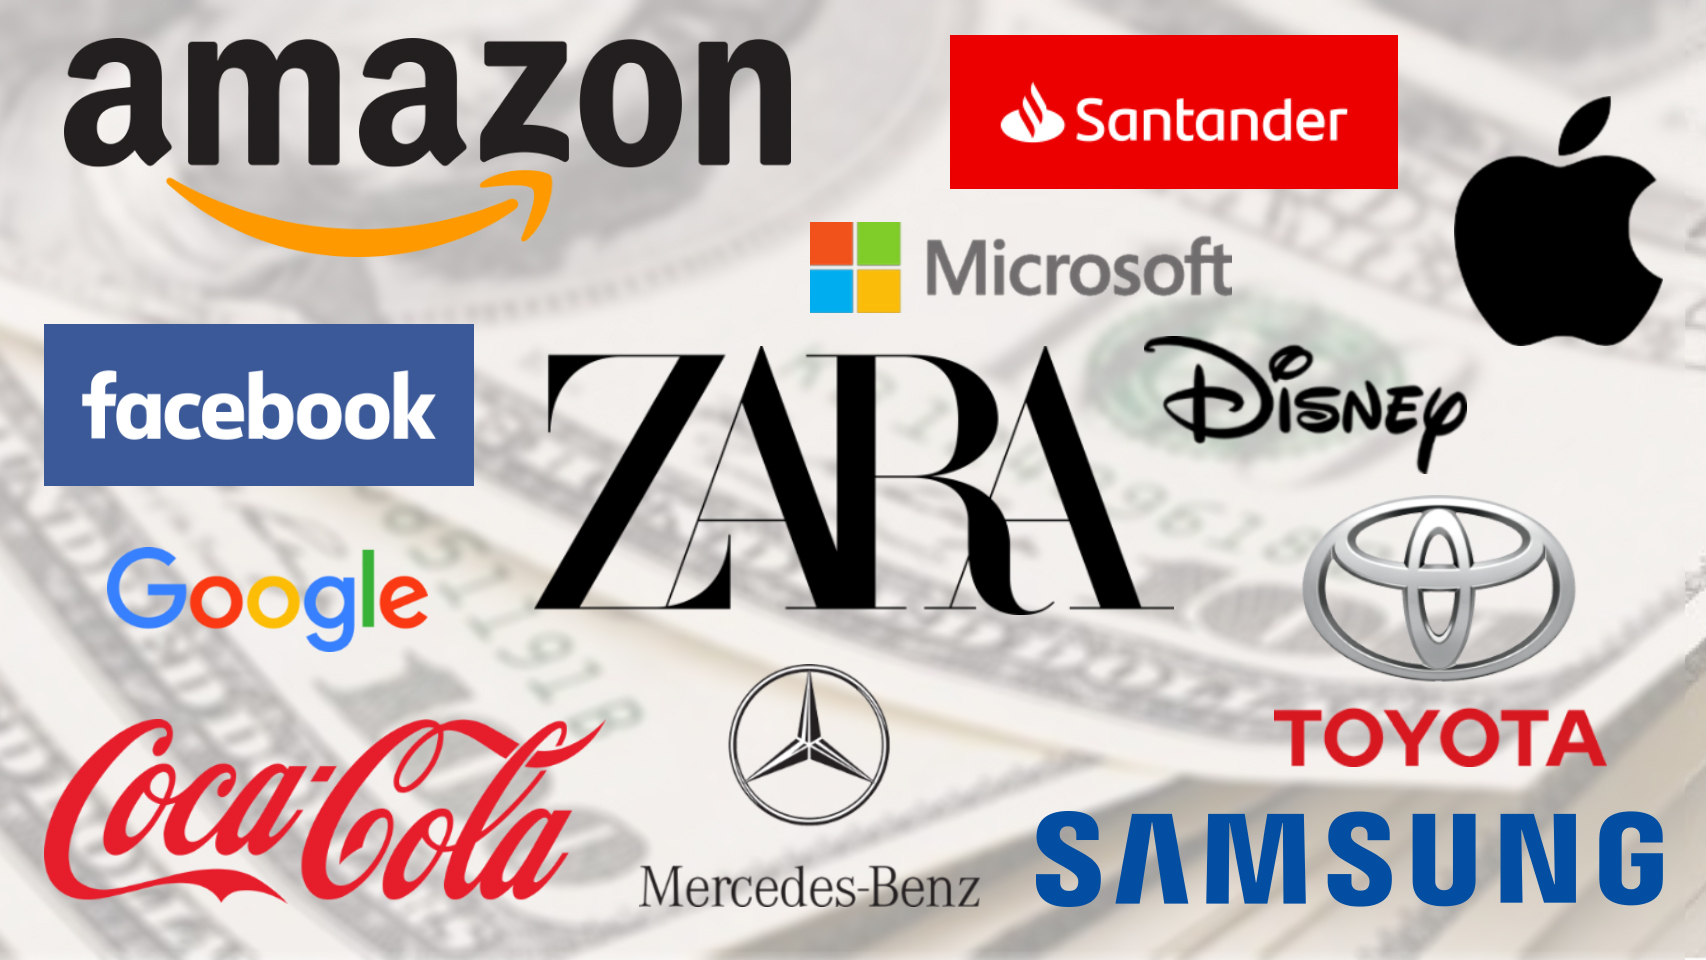 Las 100 marcas más valiosas del mundo 2019 según Interbrand.